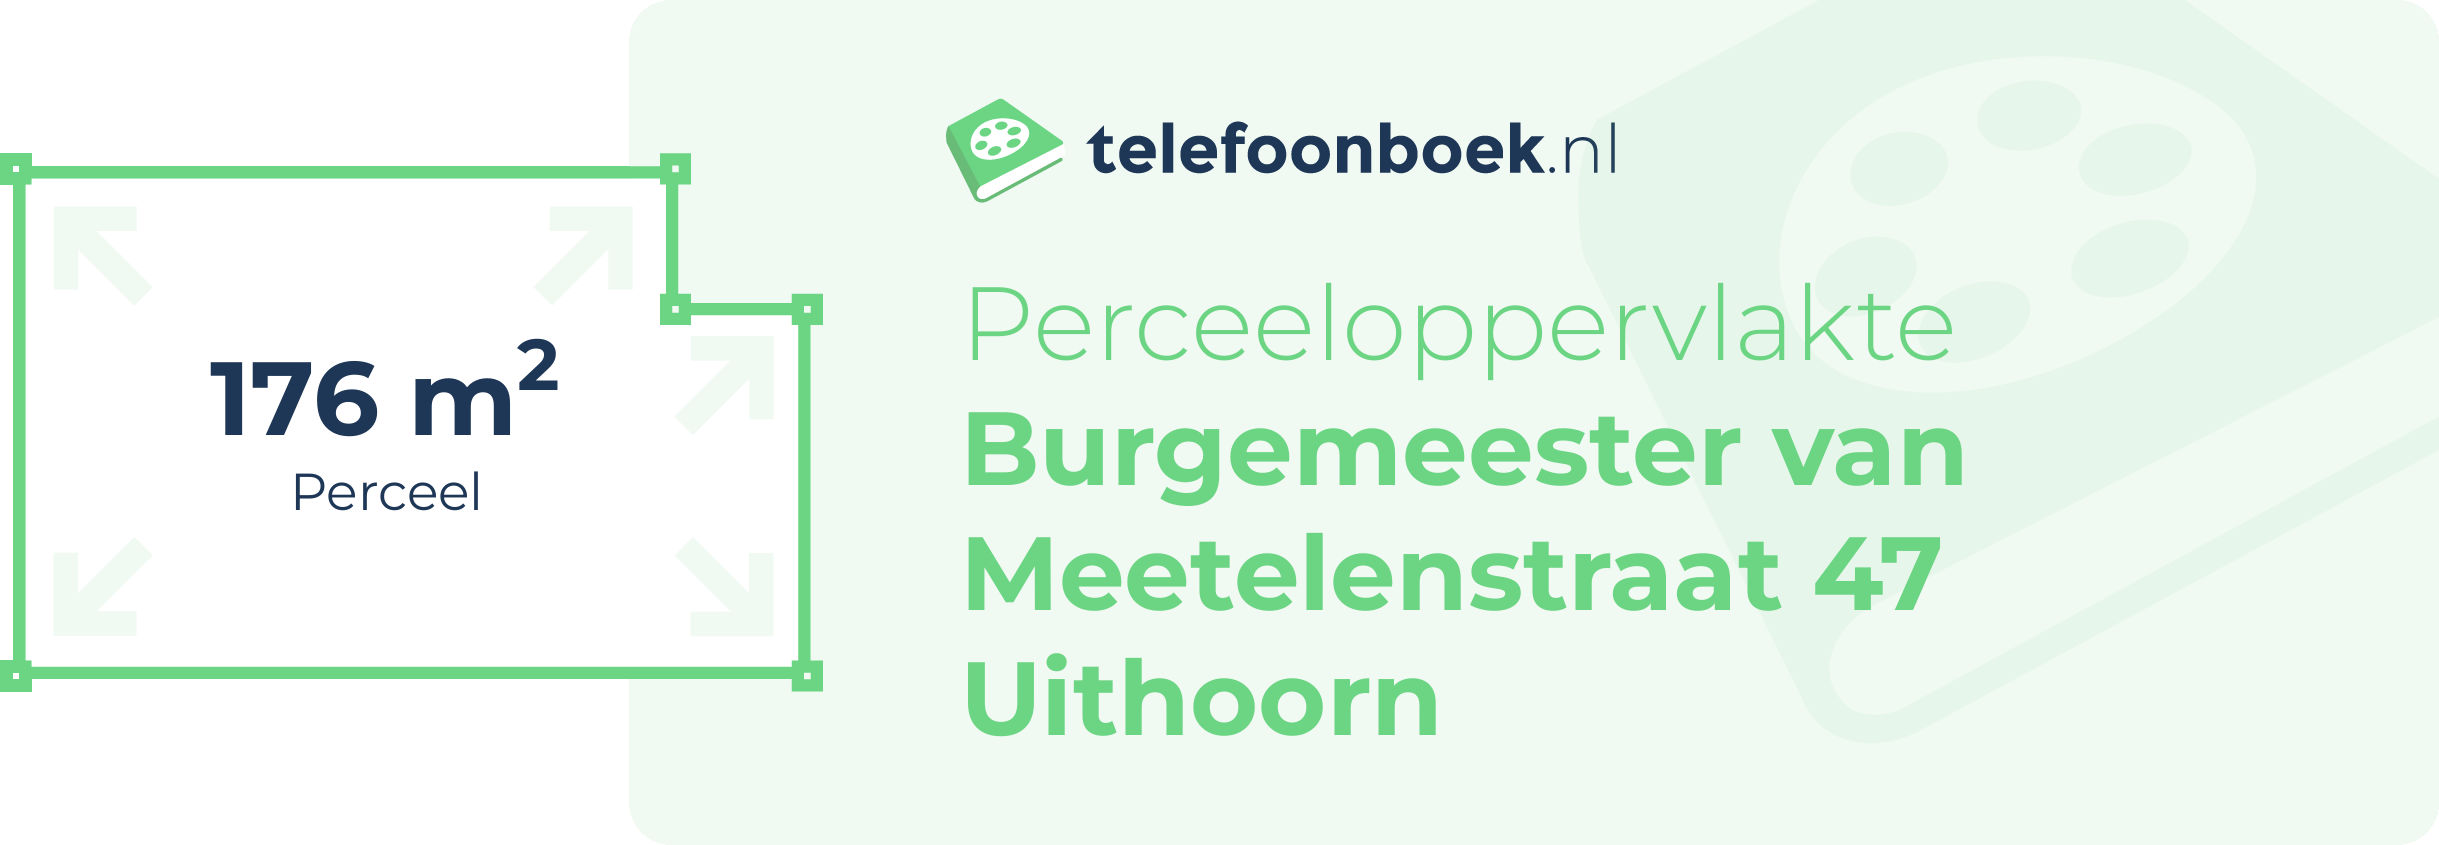 Perceeloppervlakte Burgemeester Van Meetelenstraat 47 Uithoorn